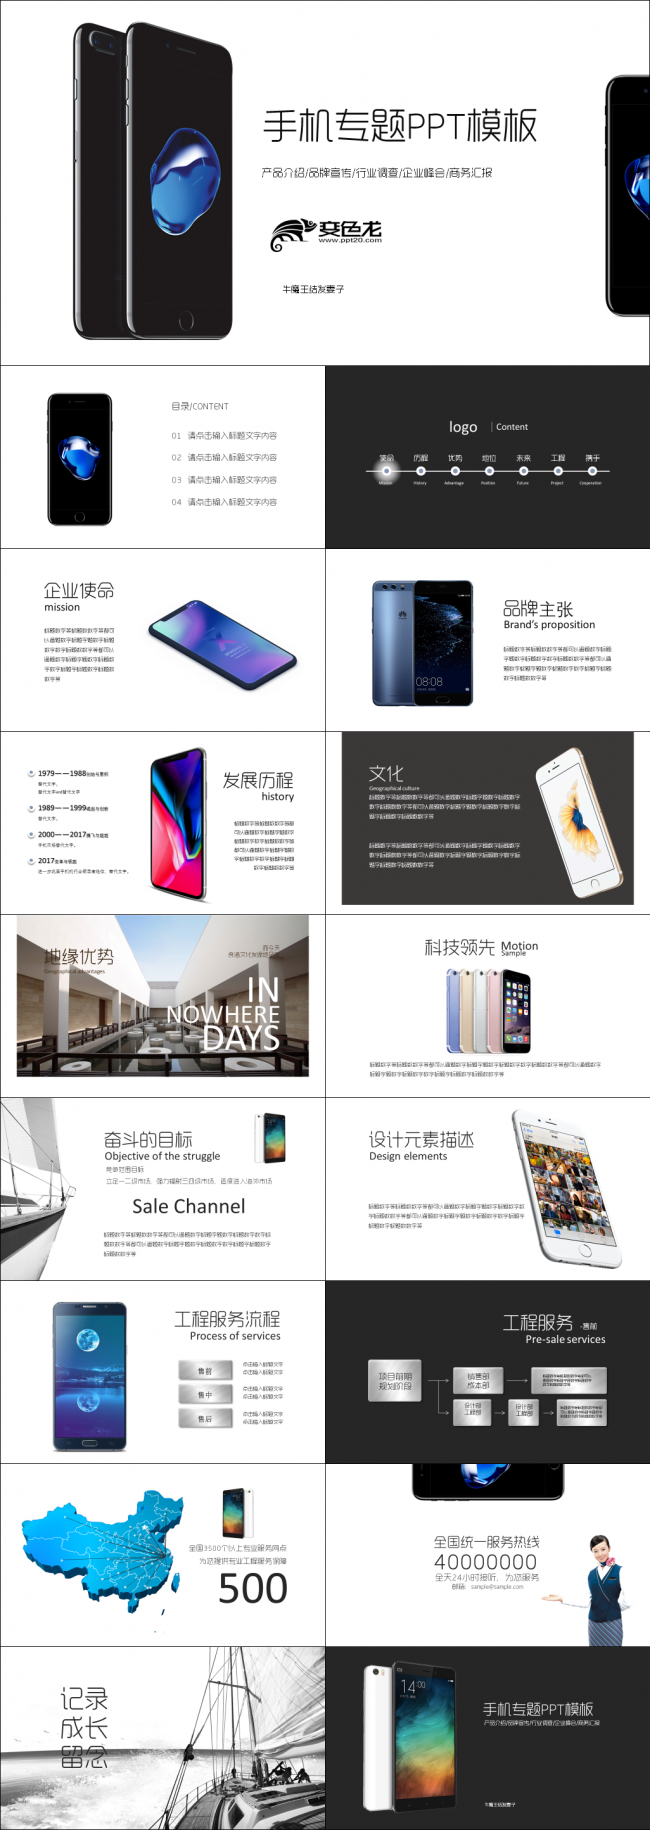 手机产品介绍品牌宣传市场调研行业峰会商务汇报PPT模板